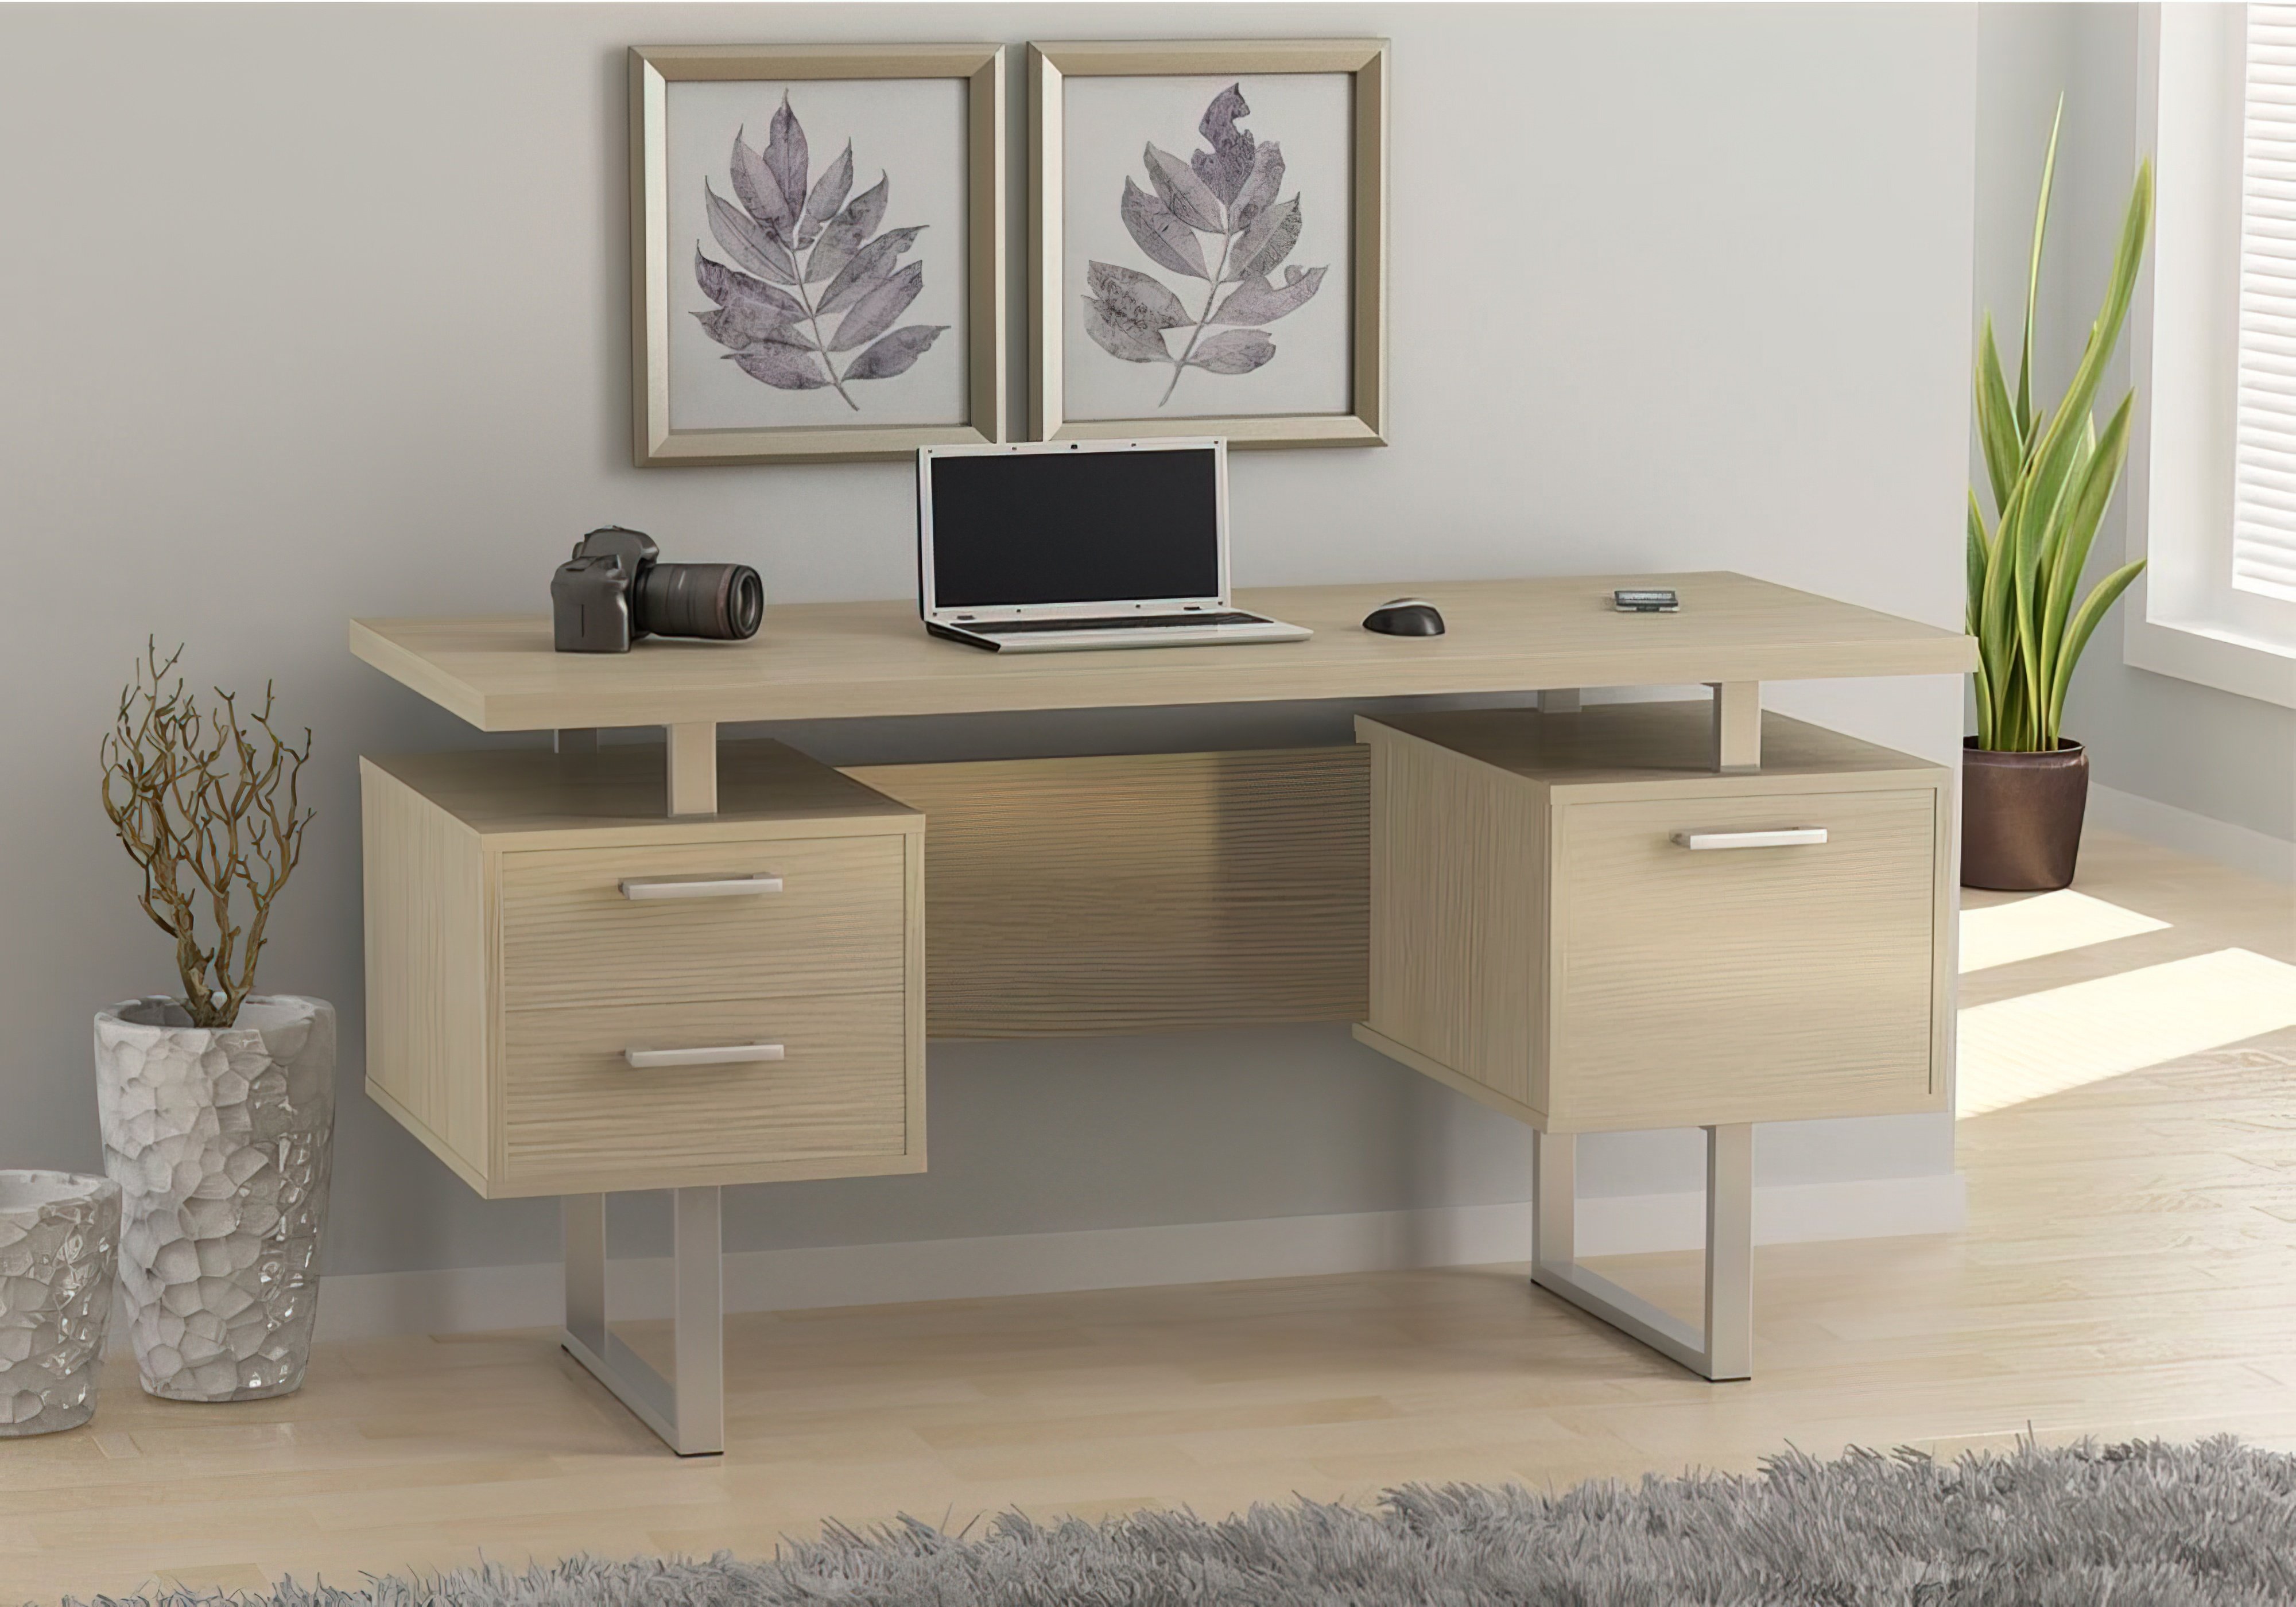  Купить Офисные столы Офисный стол "L-81 Нью" Loft Design